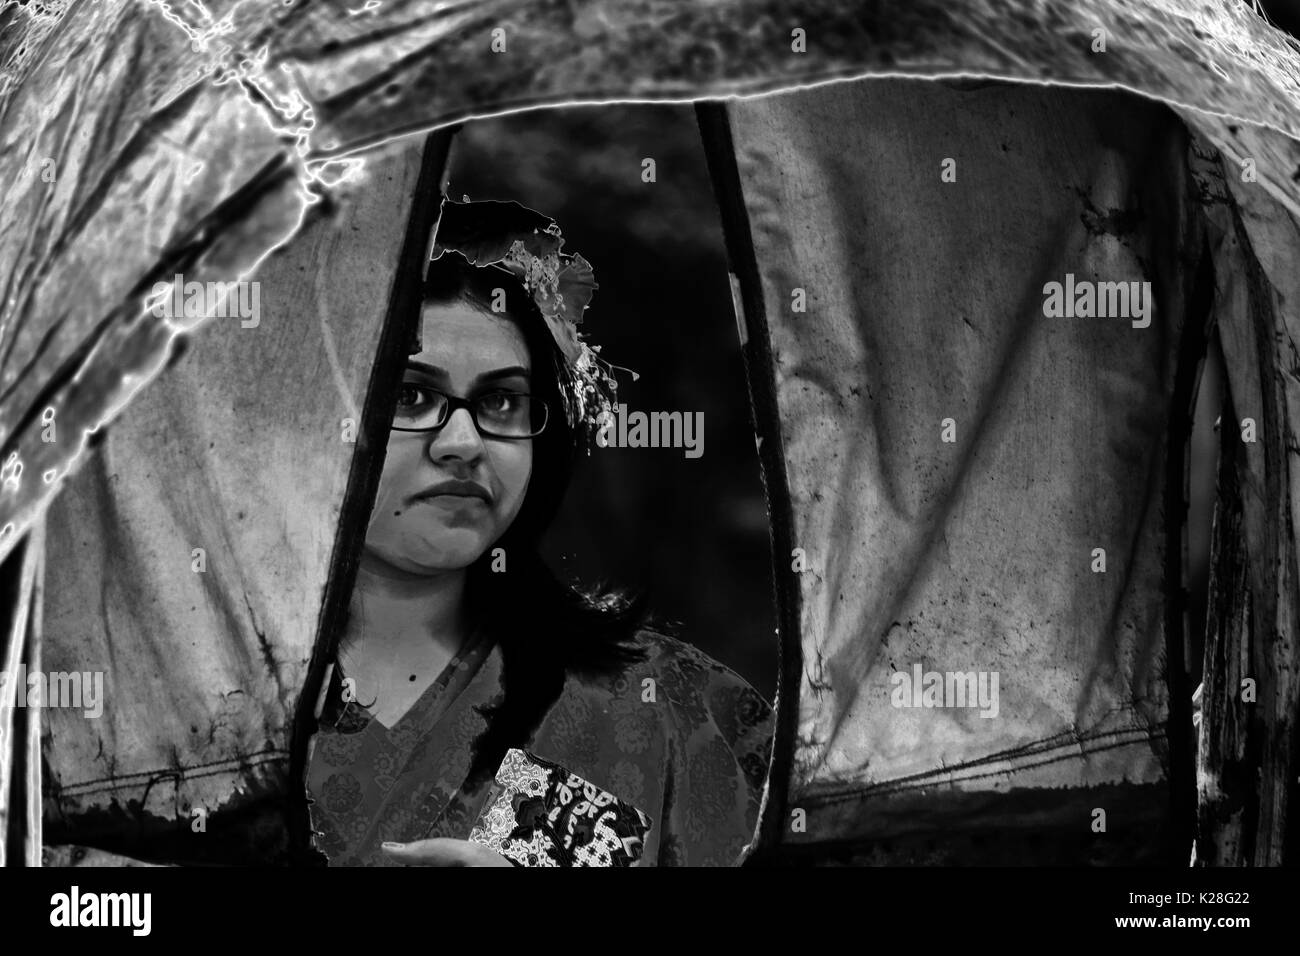 eine mysteriöse Geschichte einer Rose in unterschiedliche Wahrnehmung und Vorstellung am Valentinstag 2016 an bildender Kunst Institue, Dhaka Bangladesch... zu expres Stockfoto